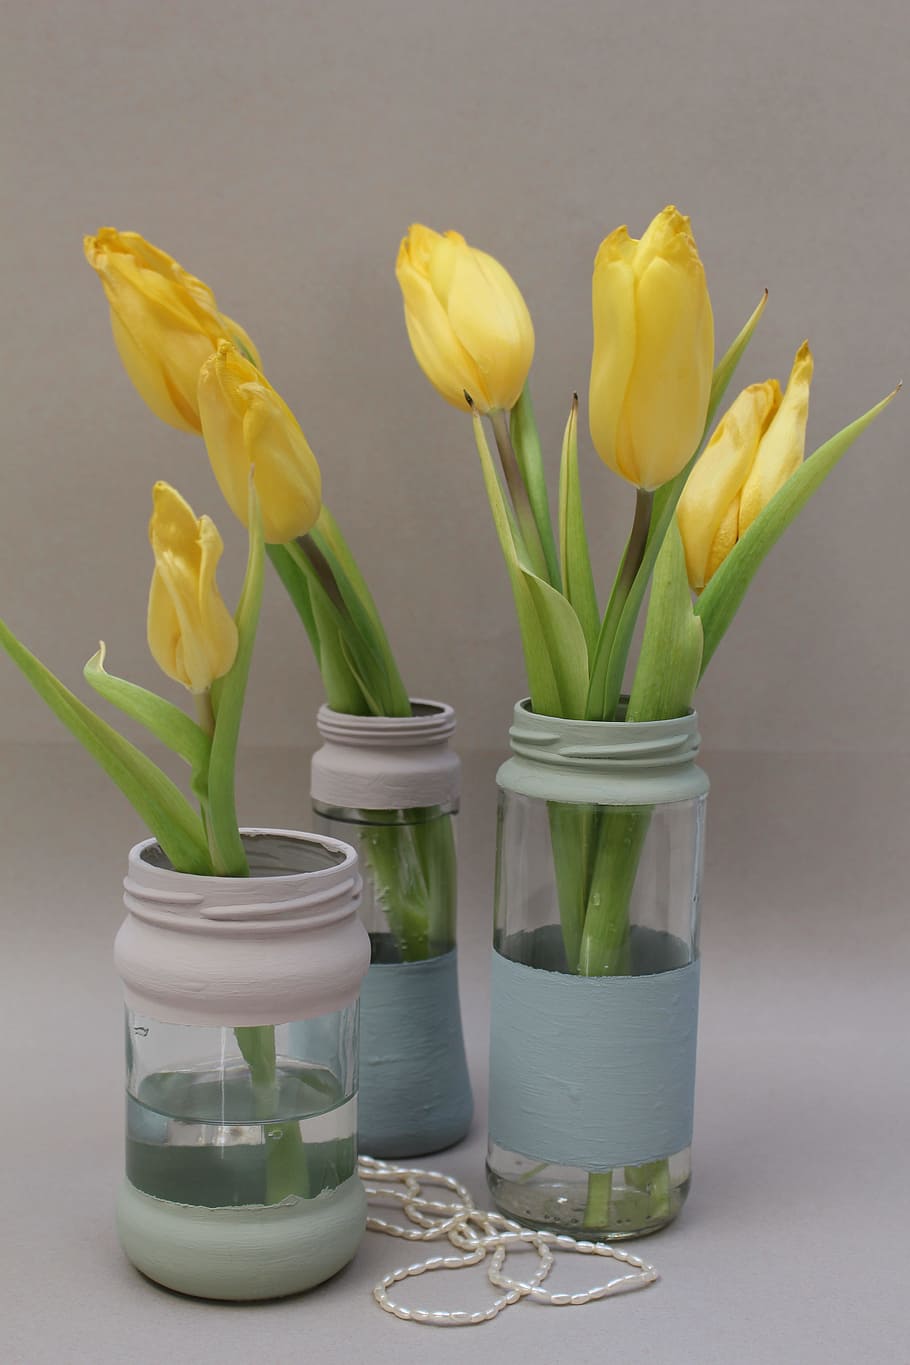 Как часто менять воду тюльпанам в вазе. Вазы для тюльпанов. Ваза с тюльпанами. Тюльпаны в вазе. Букет тюльпанов в вазе.